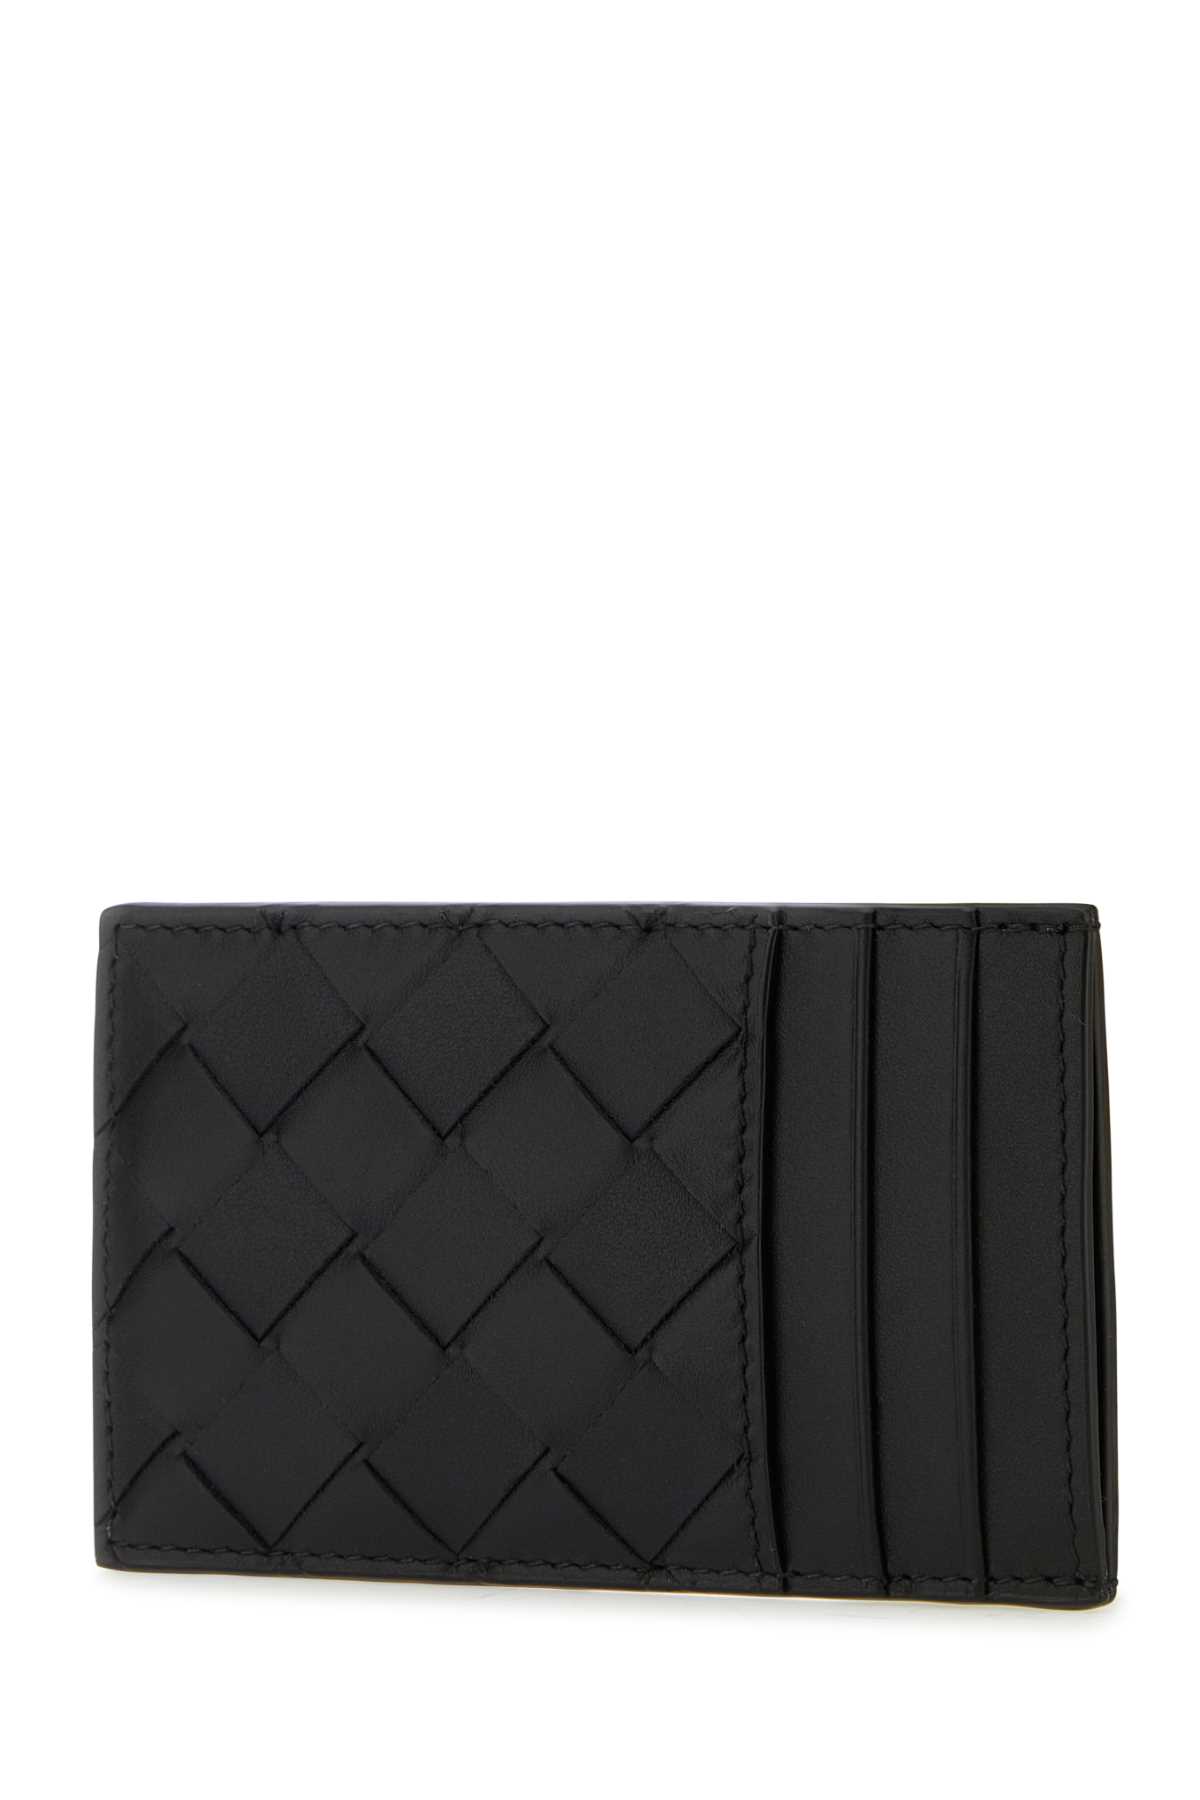 Bottega Veneta Black Leather Cardholder In Blacksilver